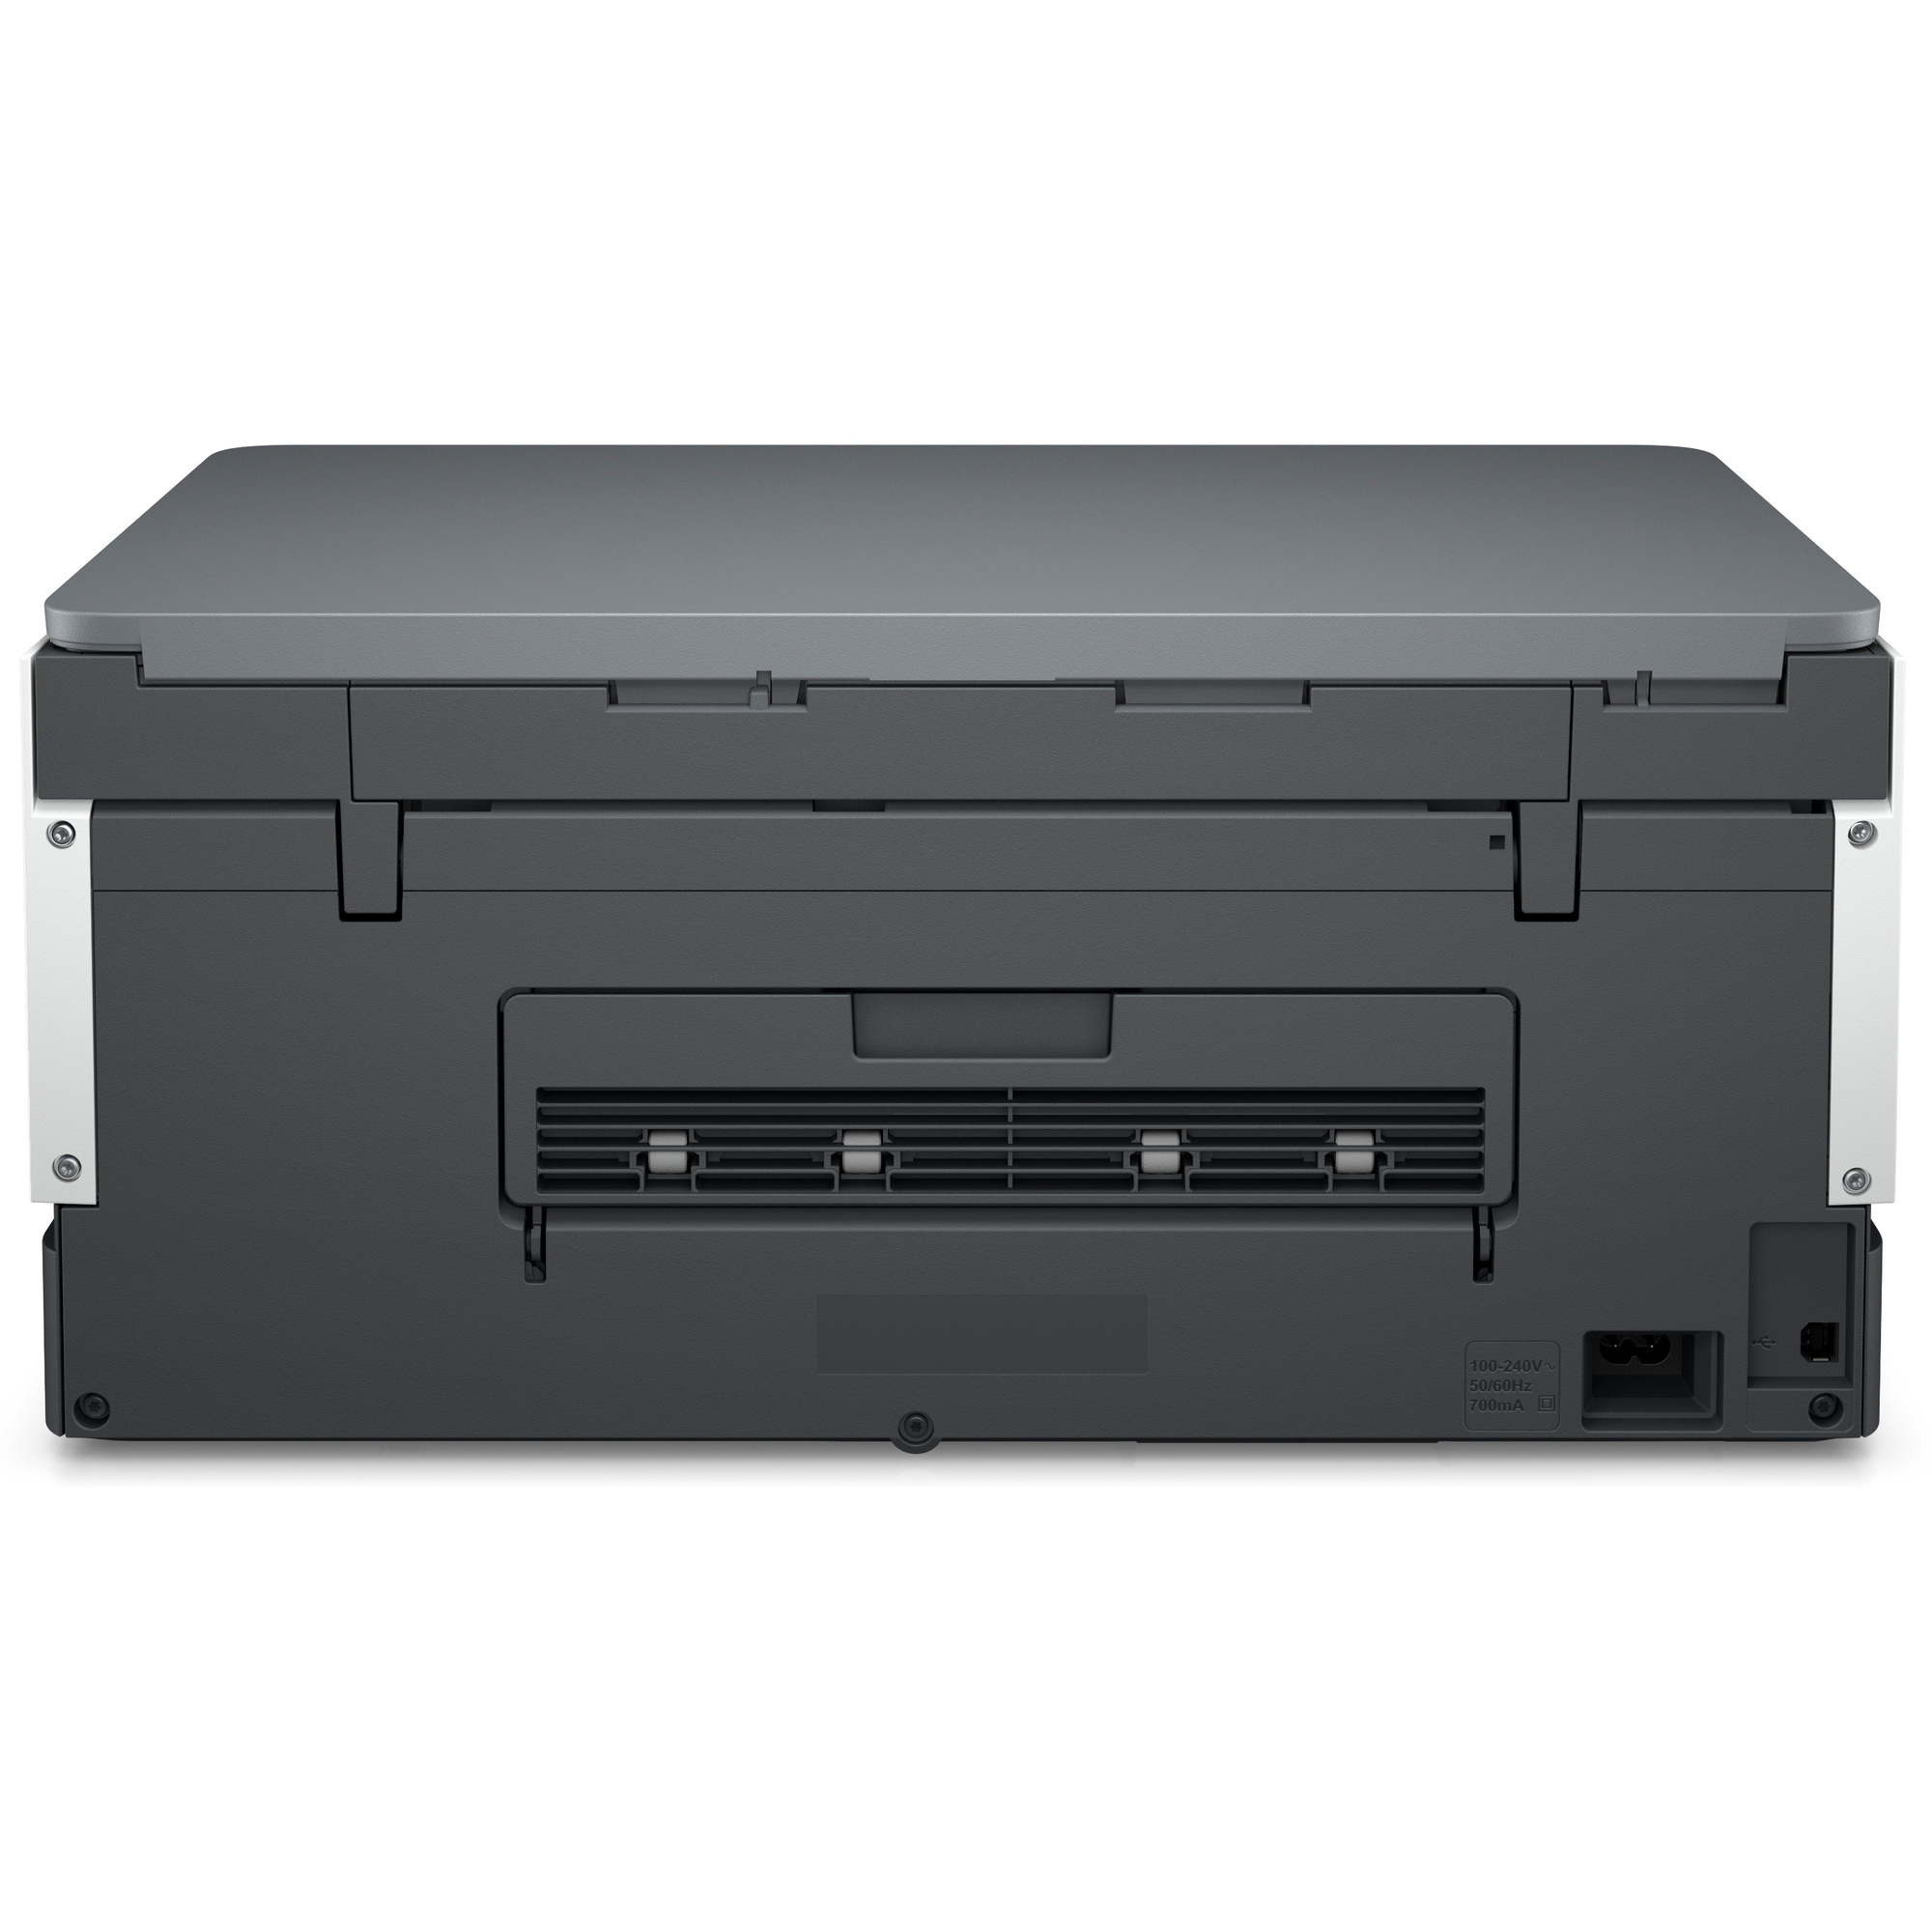 Atramentová nádržka HP All-in-One Smart Tank 670 (A4, 12/7 strán za minútu, USB, Wi-Fi, tlač, skenovanie, kopírovanie, 8 